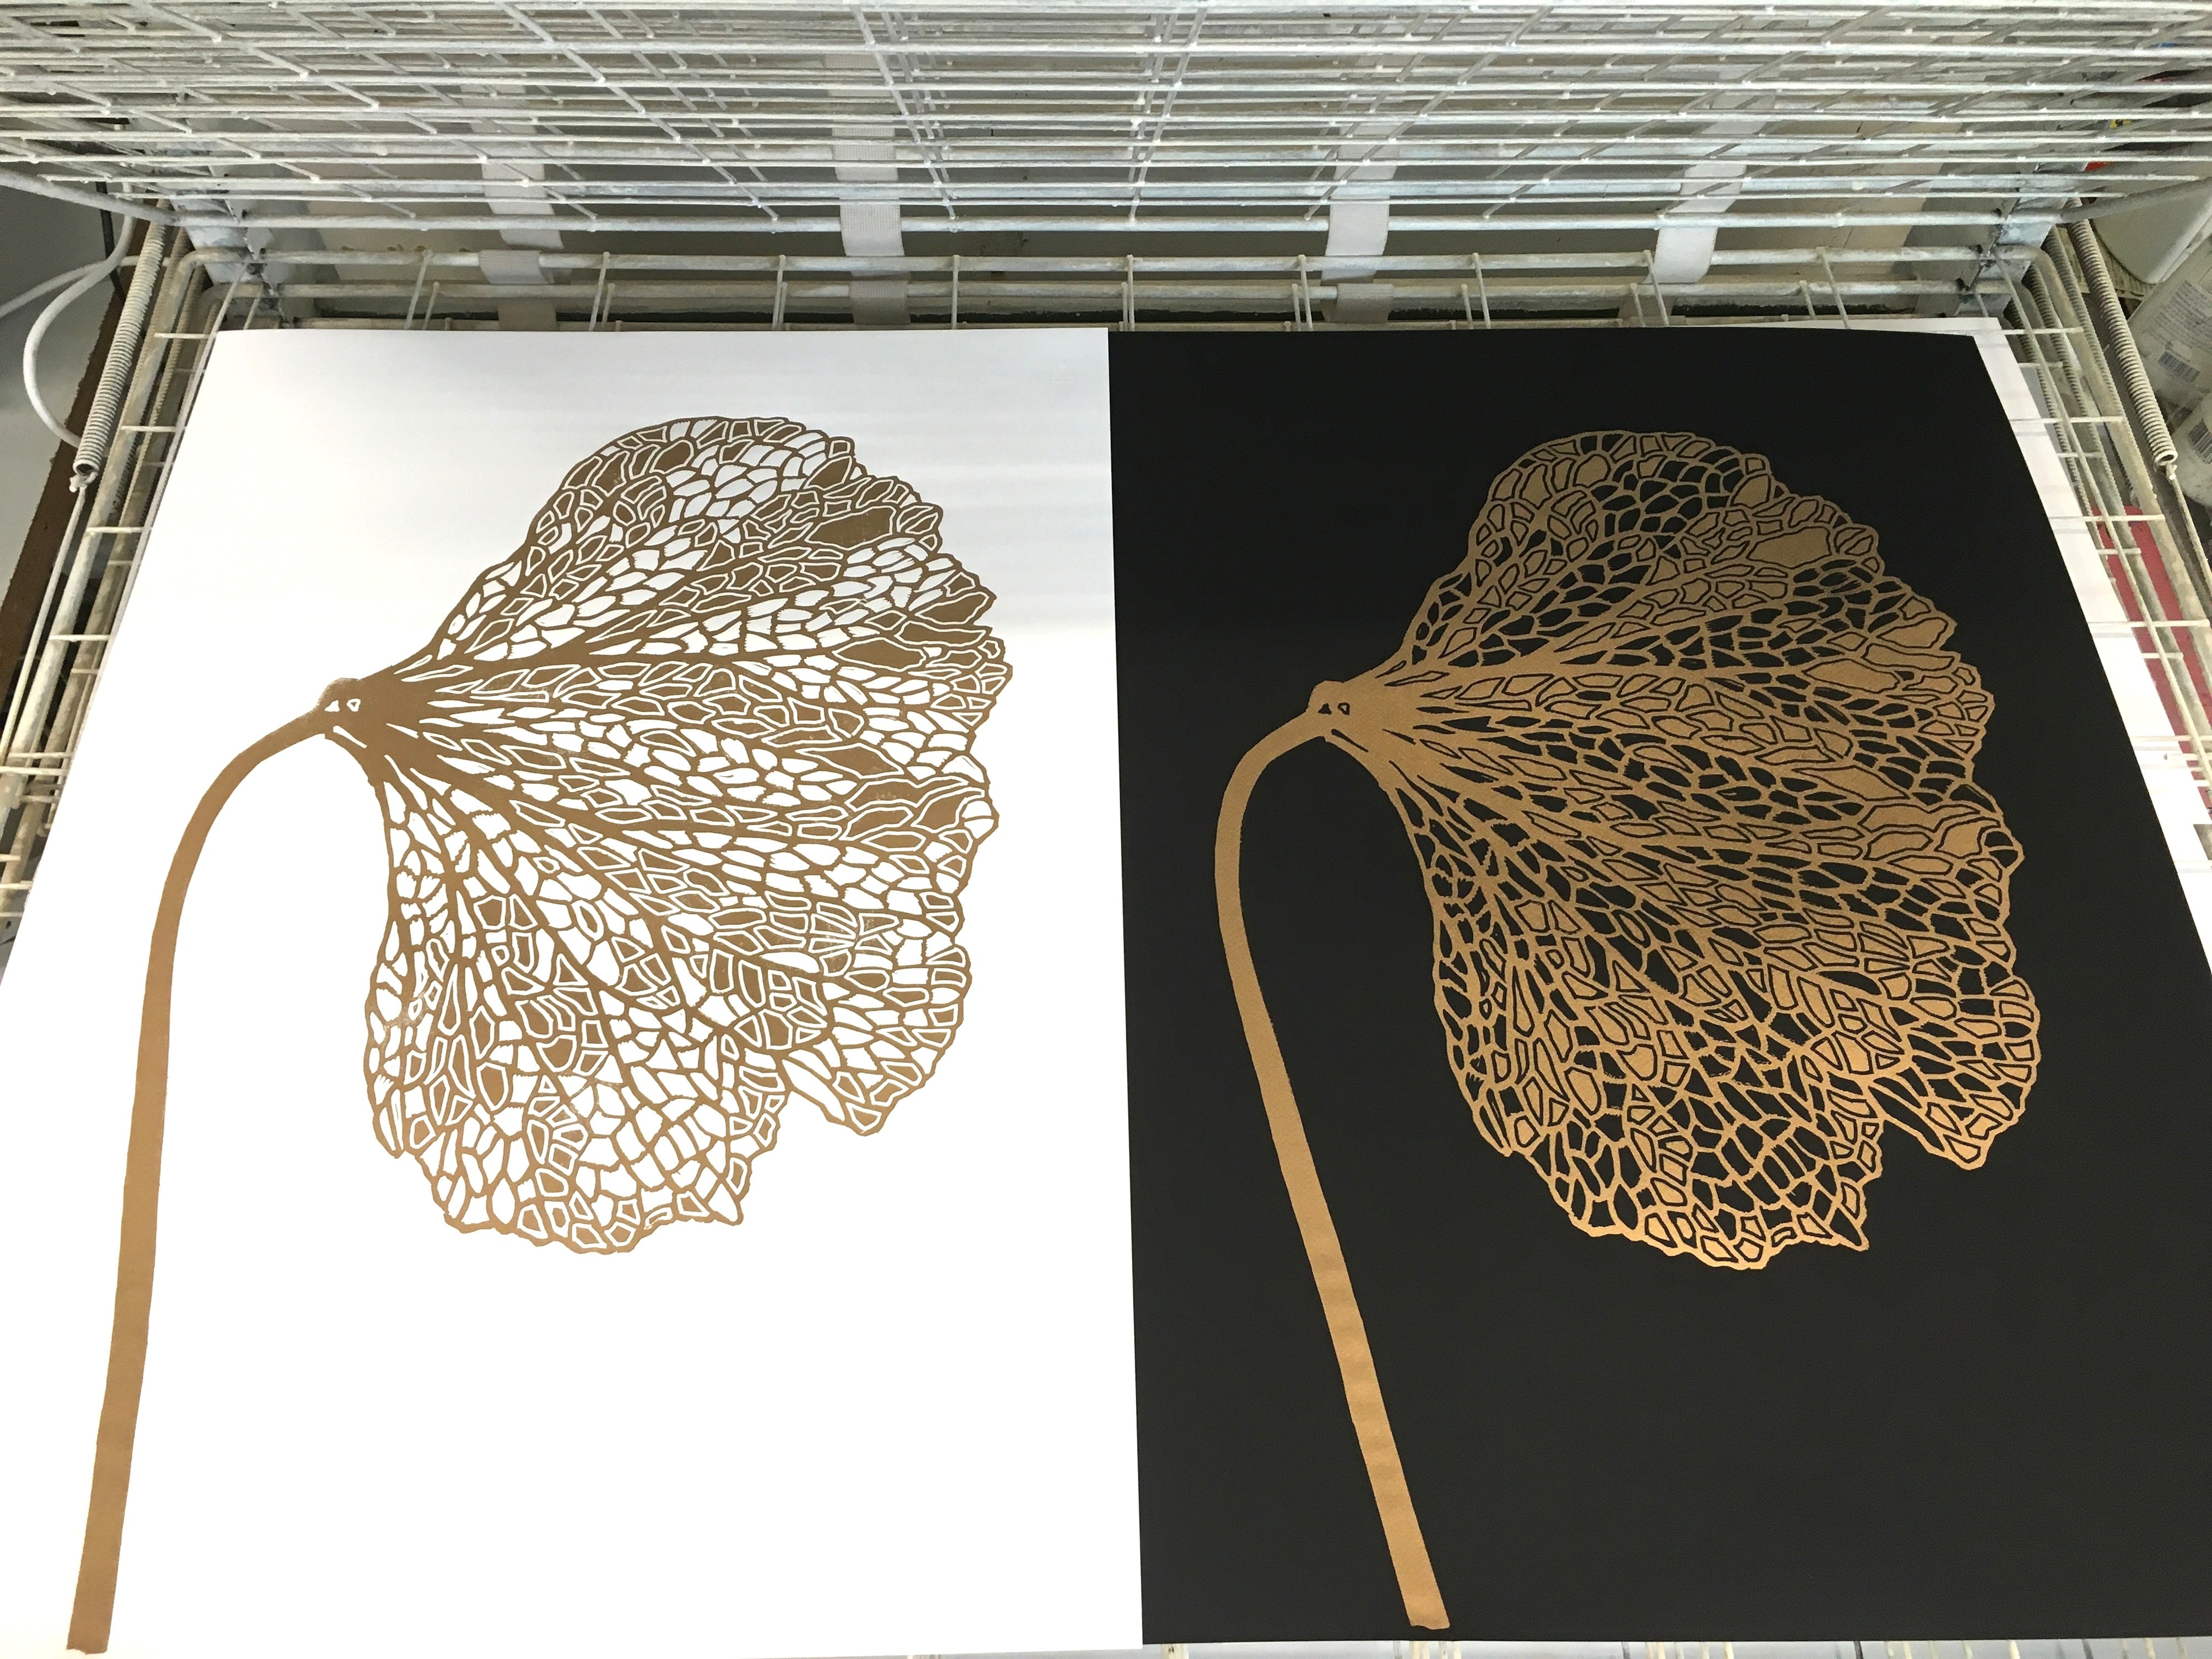 The art of botanic details by Monika Petersen